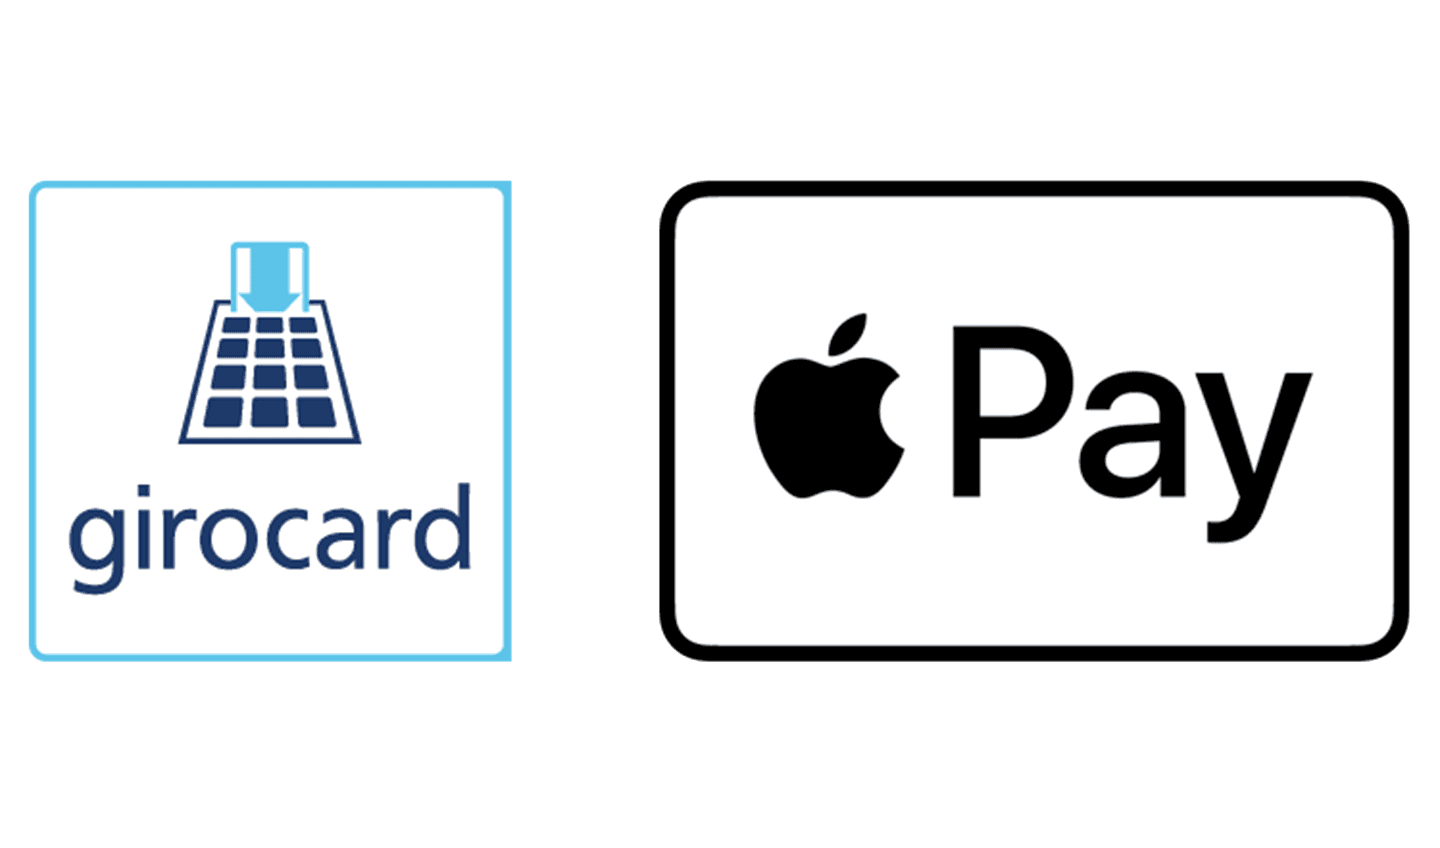 Transparente png Montage von zwei Logos zum mobilen Zahlen. Links GiroCard ohne NFC Funktion und rechts das Apple Pay Zeichen.